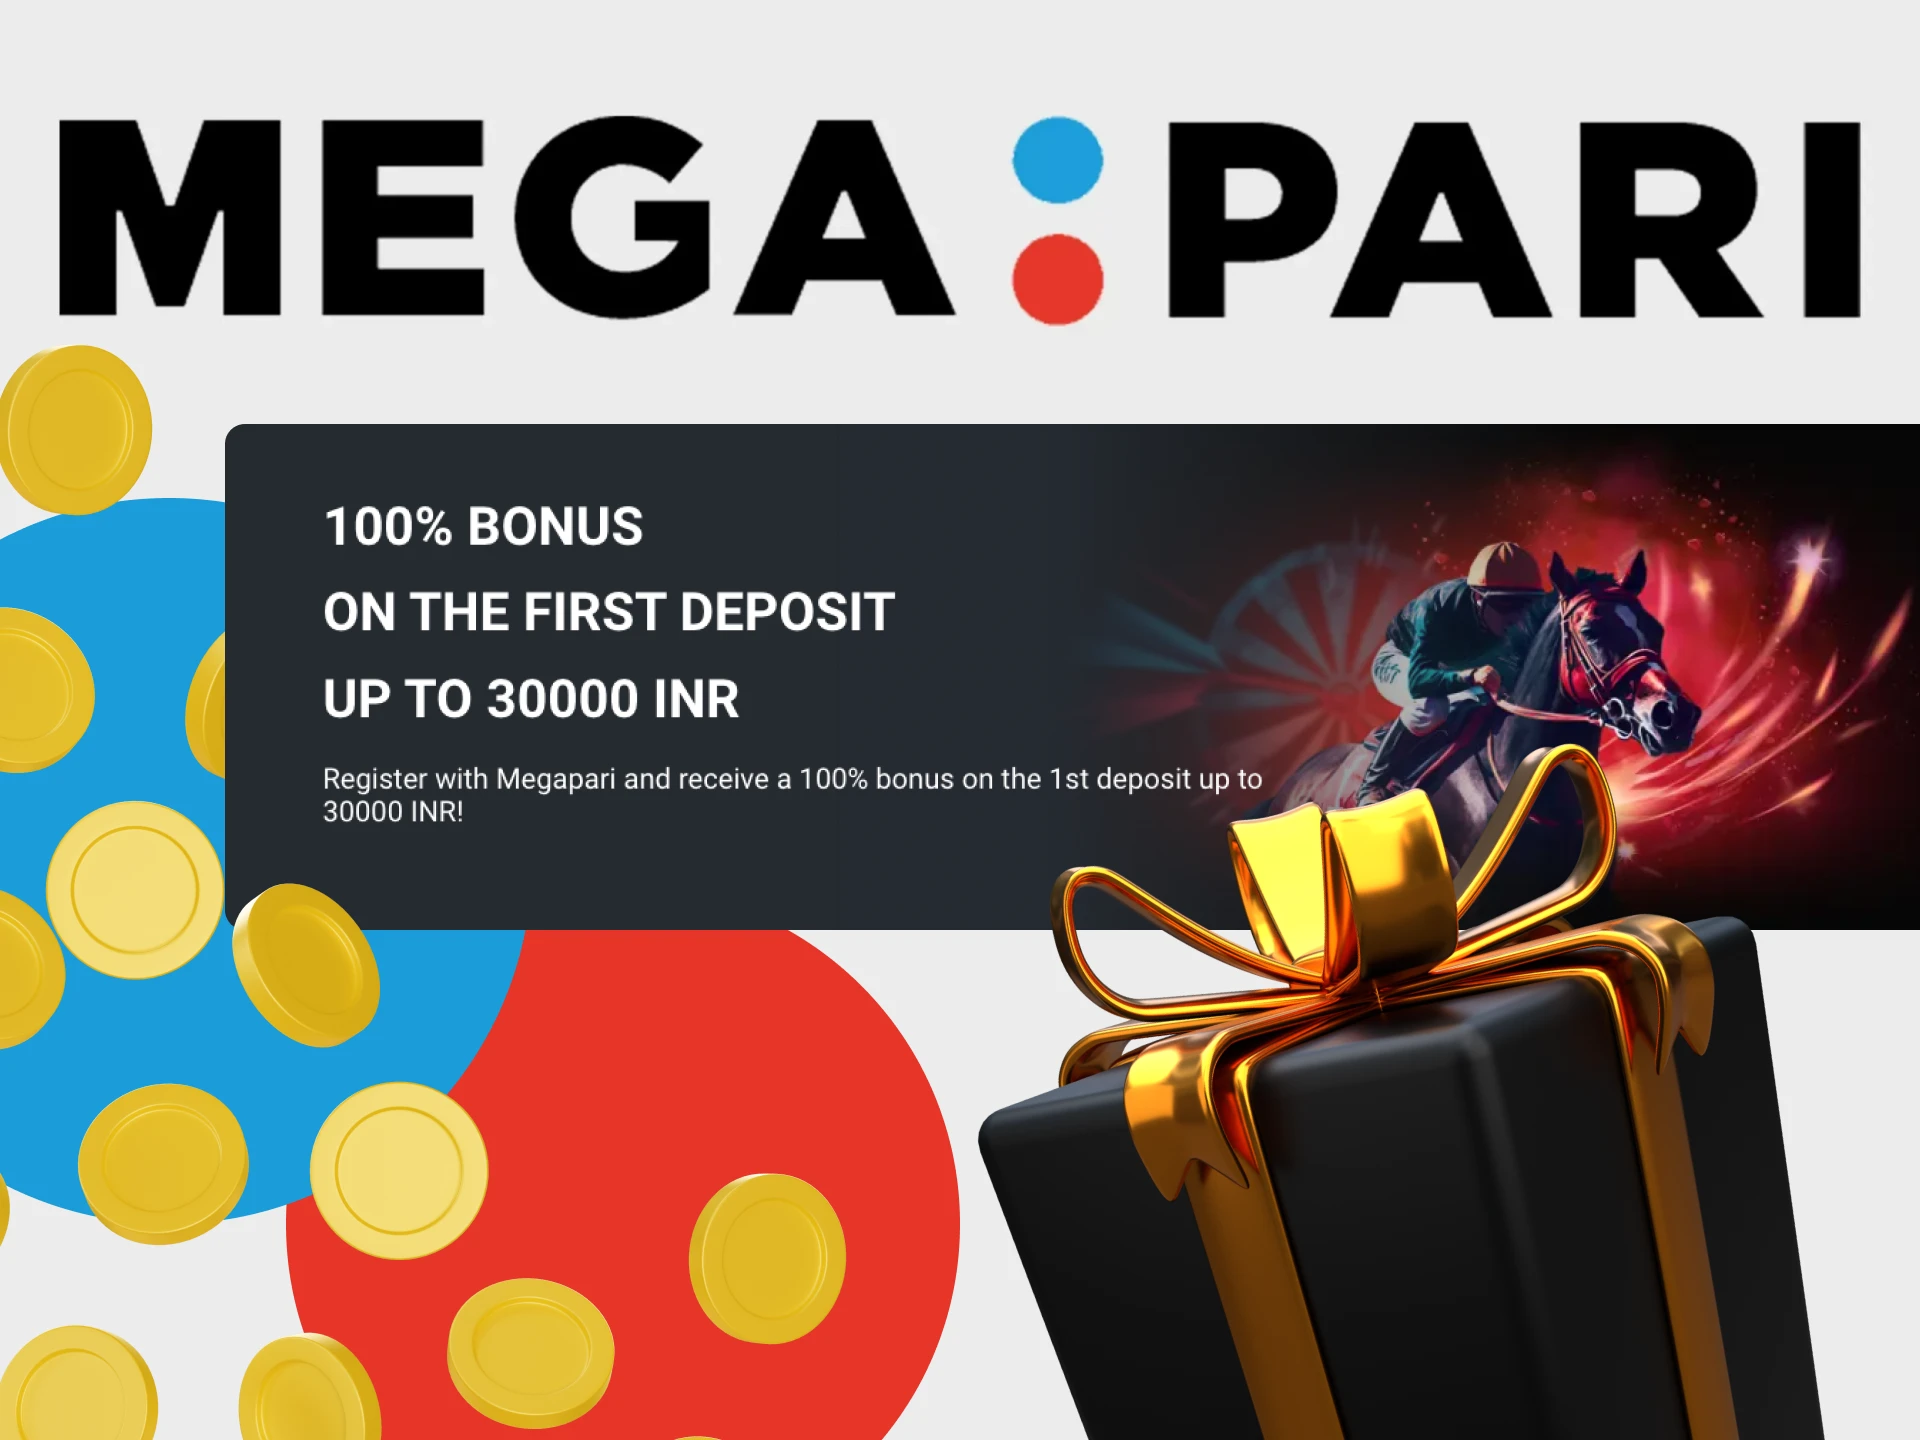 Get the first deposit bonus in the Megapari app.